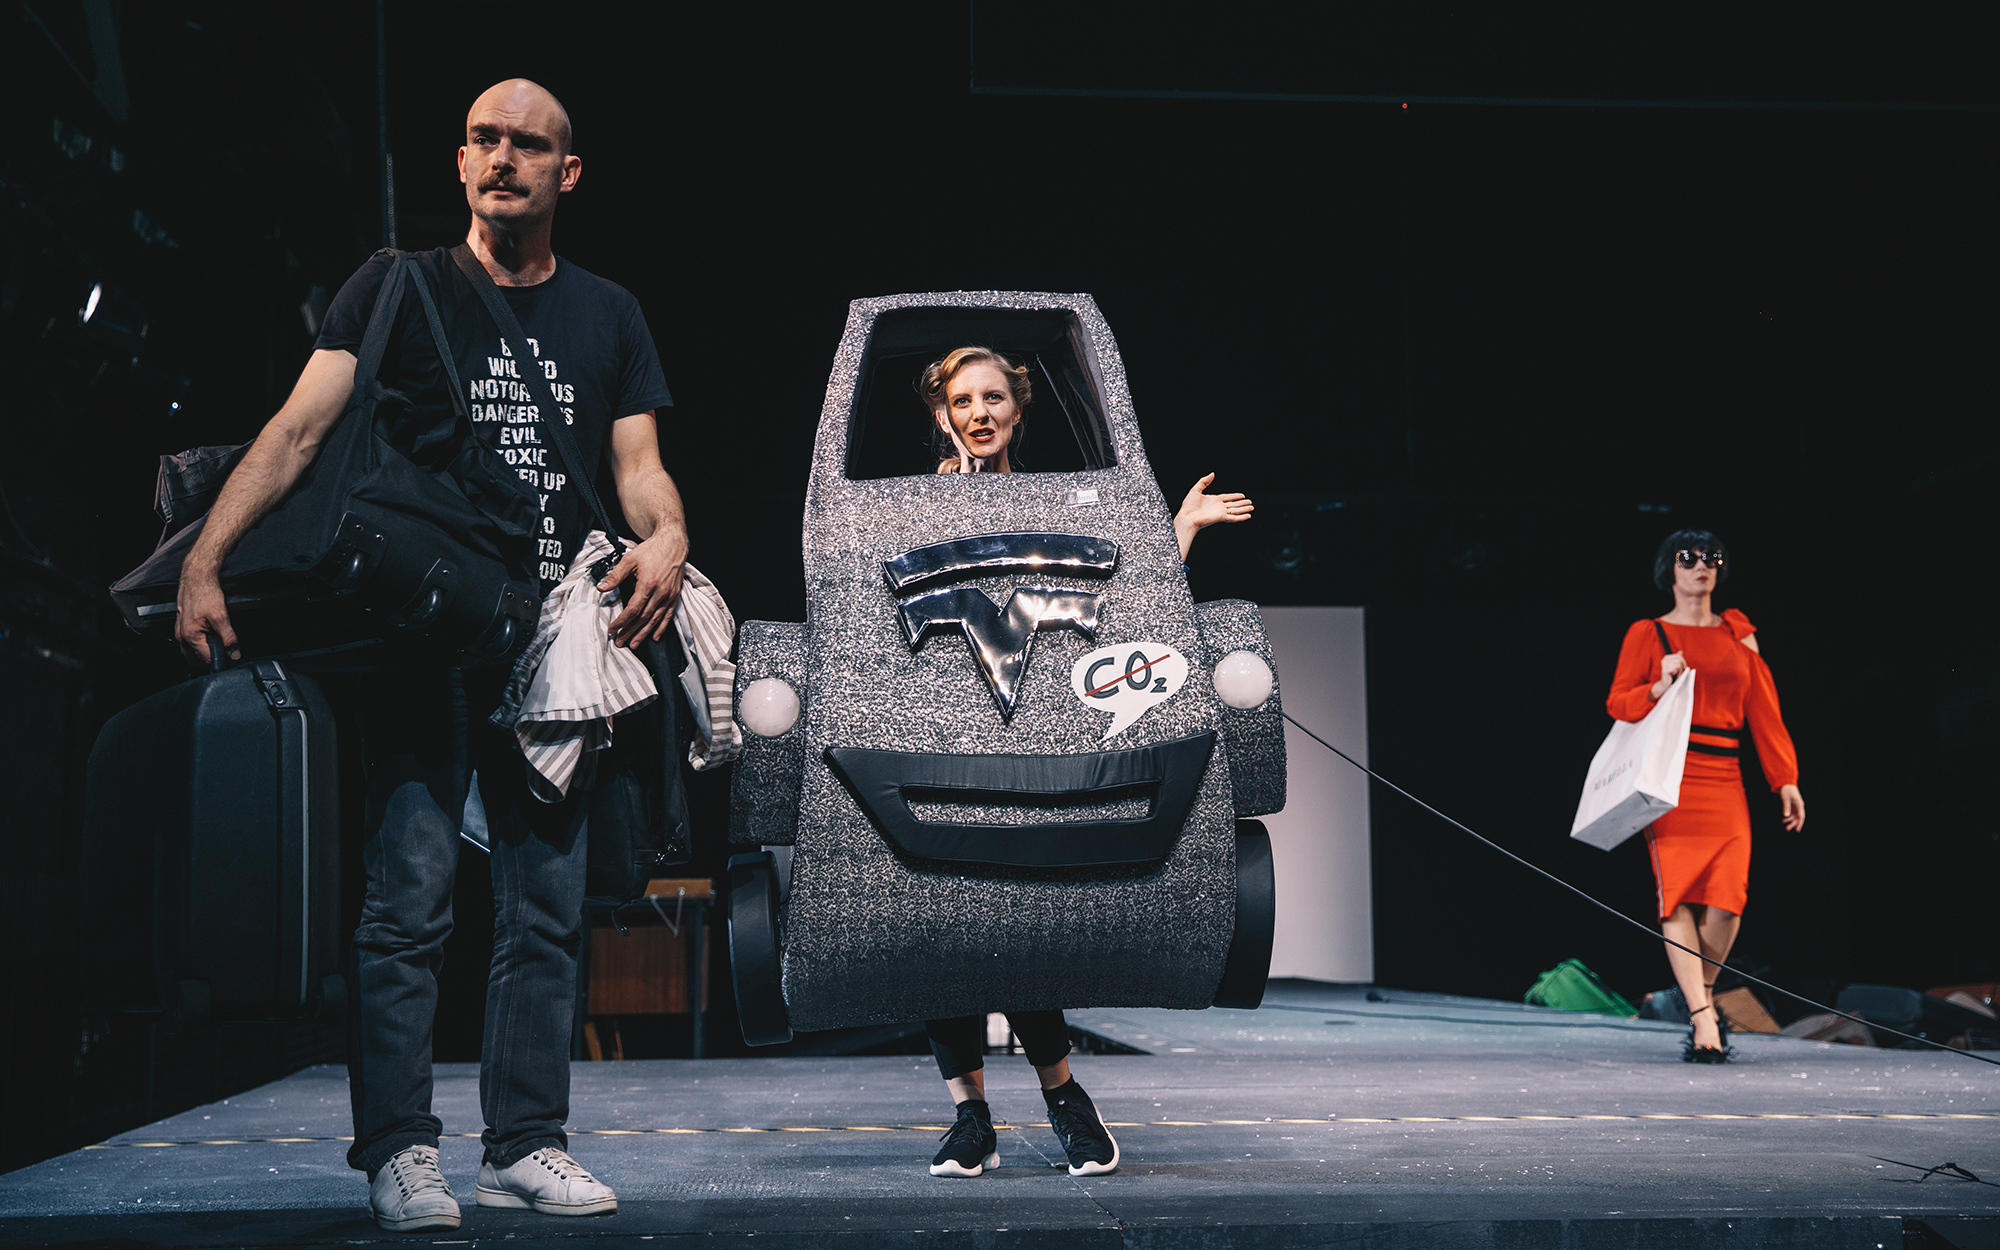 Toni (Gregor Gruden) je oprtan z vso svojo prtljago. Ob njem je Brenda (Lena Hribar) v maketi srebrnega avtomobila, ki dela reklamo za nizek izpust CO2. Iz ozadja v rdeči obleki prihaja Žana (Jana Zupančič) z nakupovalno vrečko na rami. Avtor fotografije: